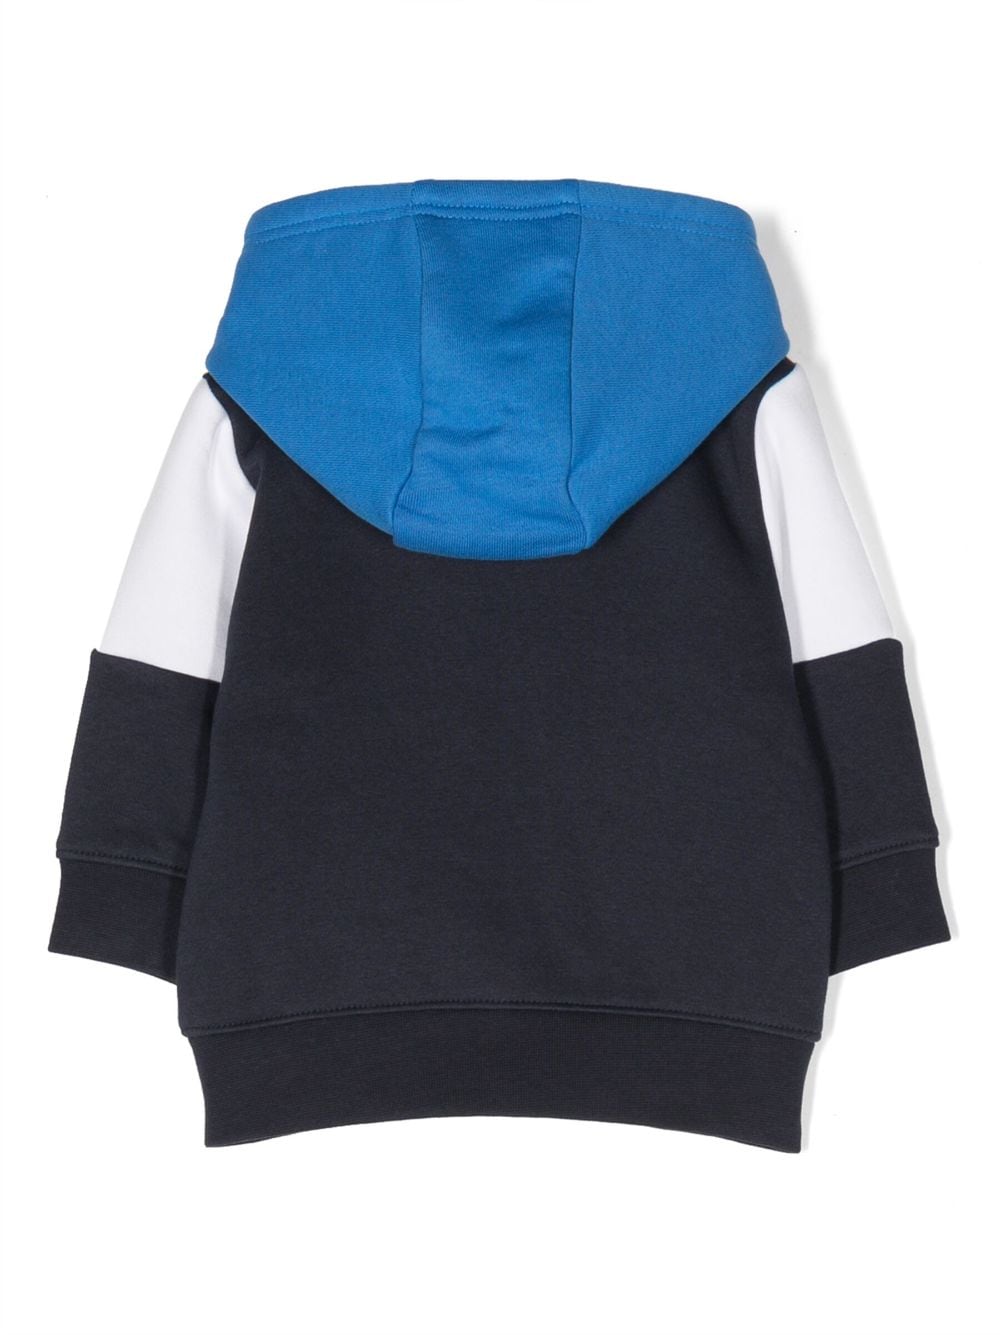 Sweat à capuche bleu et blanc pour nouveau-né, avec imprimé sur le devant, détail à rayures horizontales bleu clair